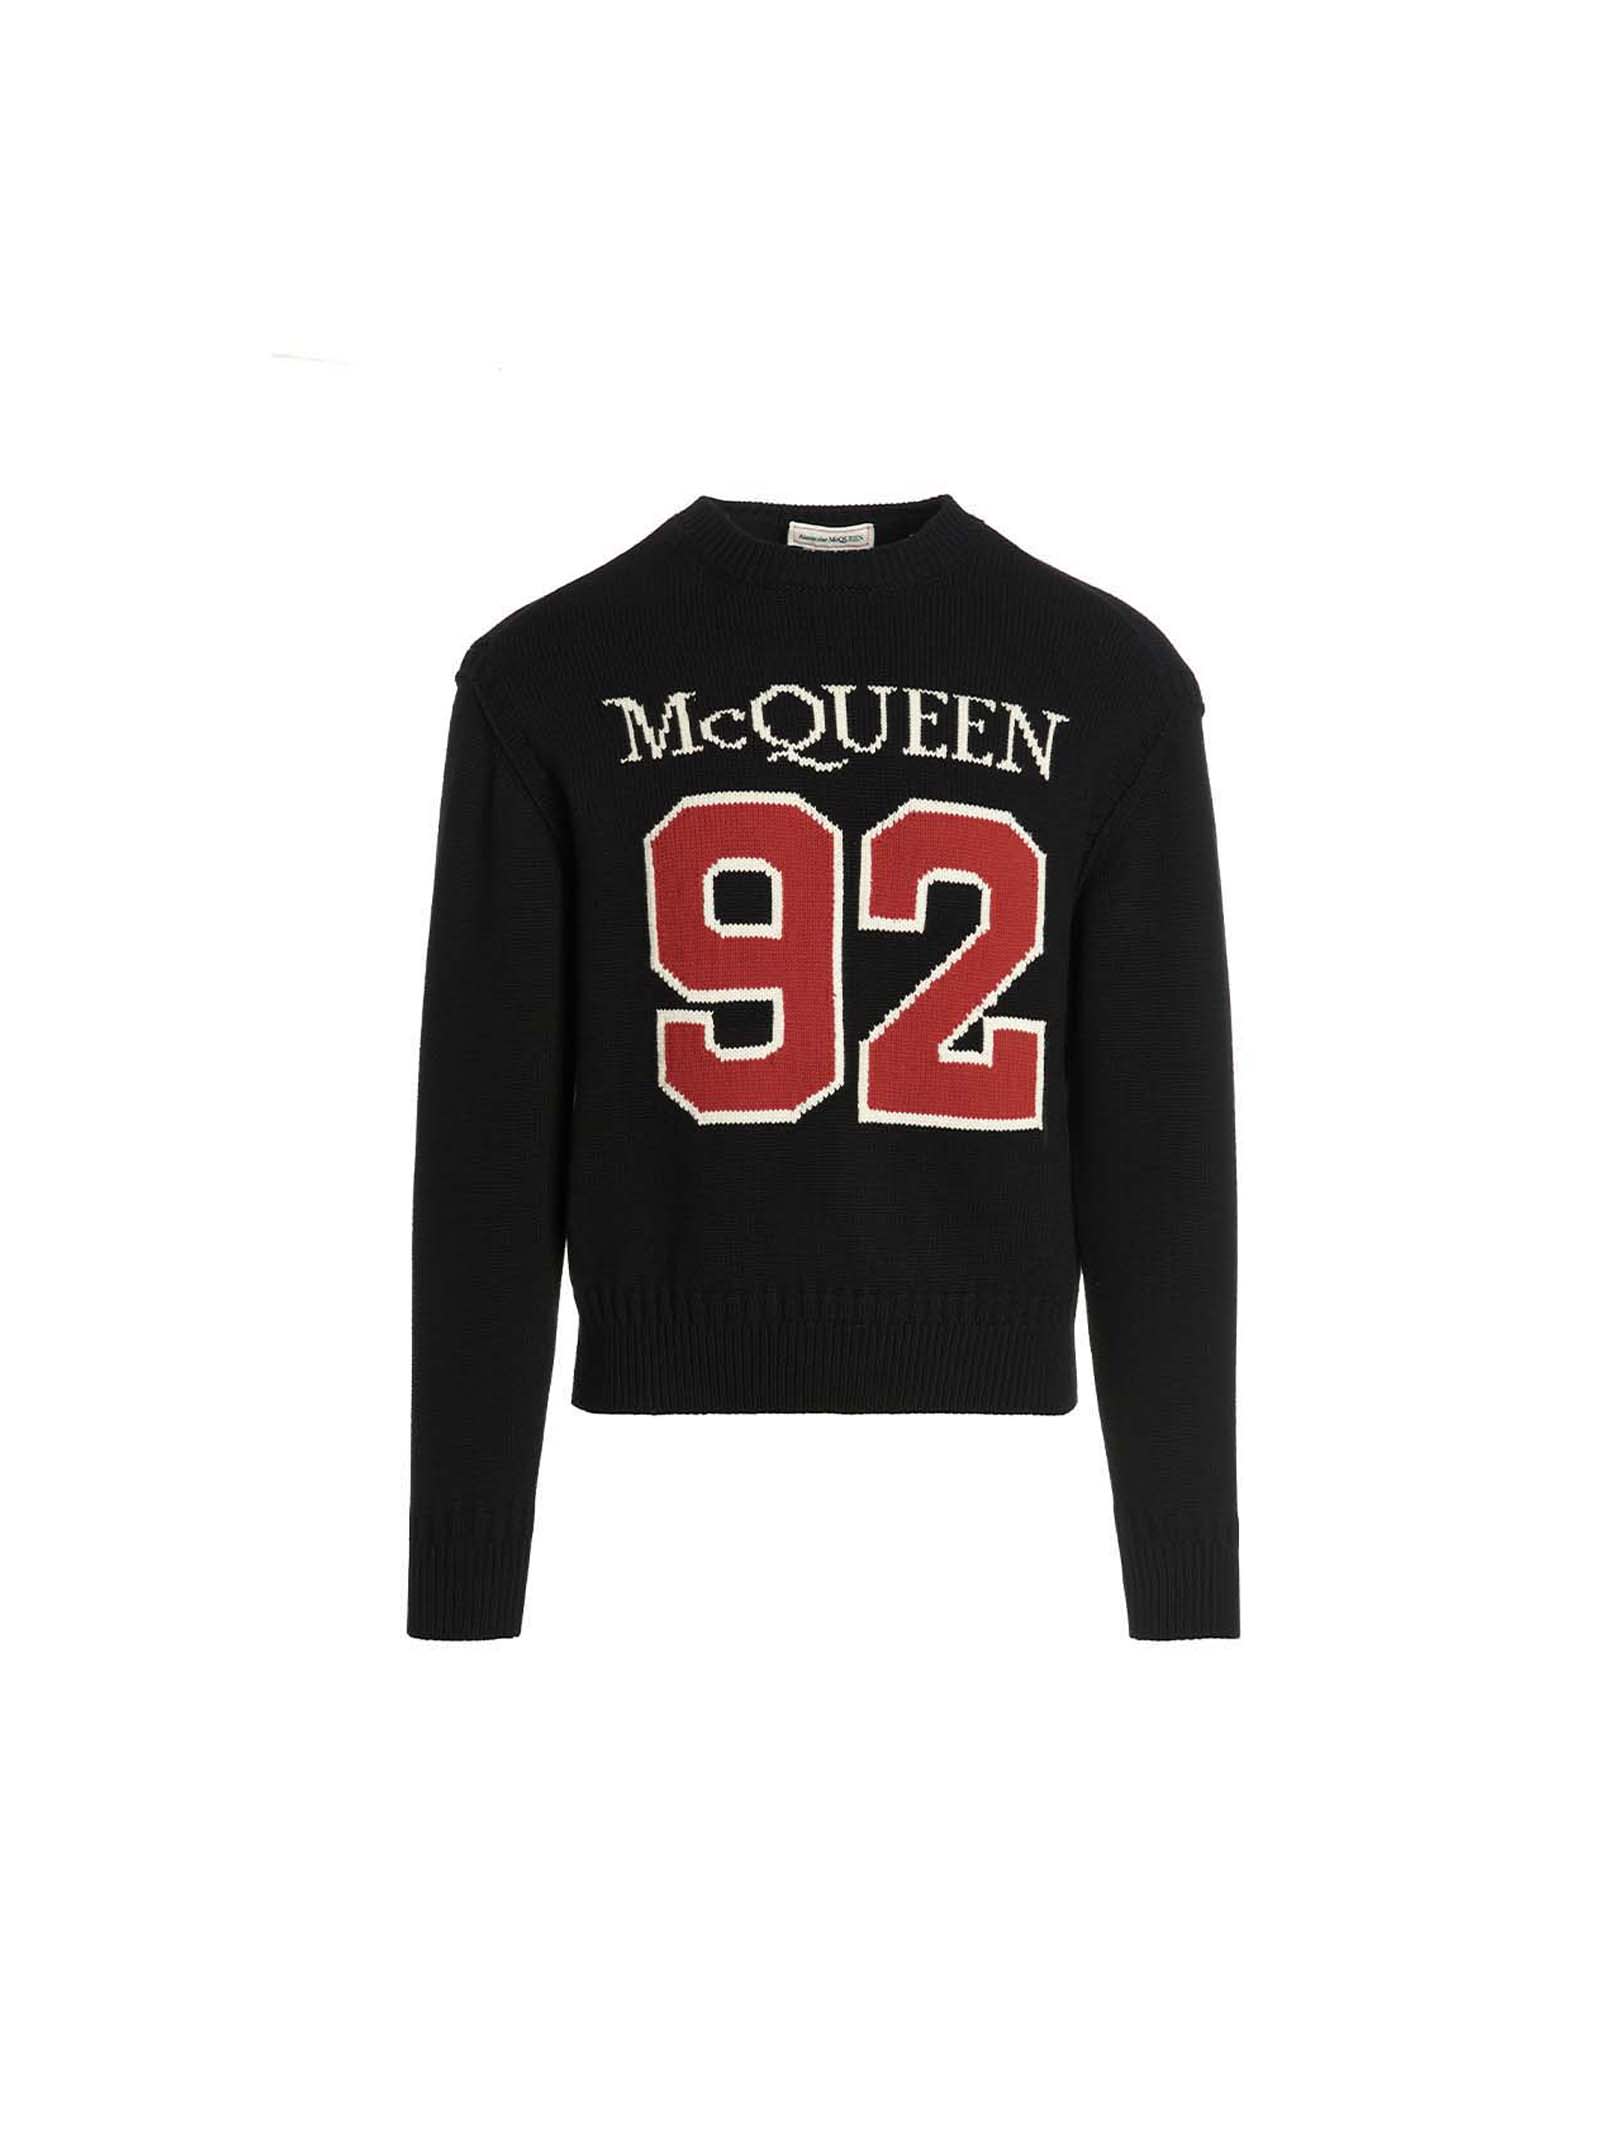 Alexander McQueen Black Mcqueen 92 Sweater